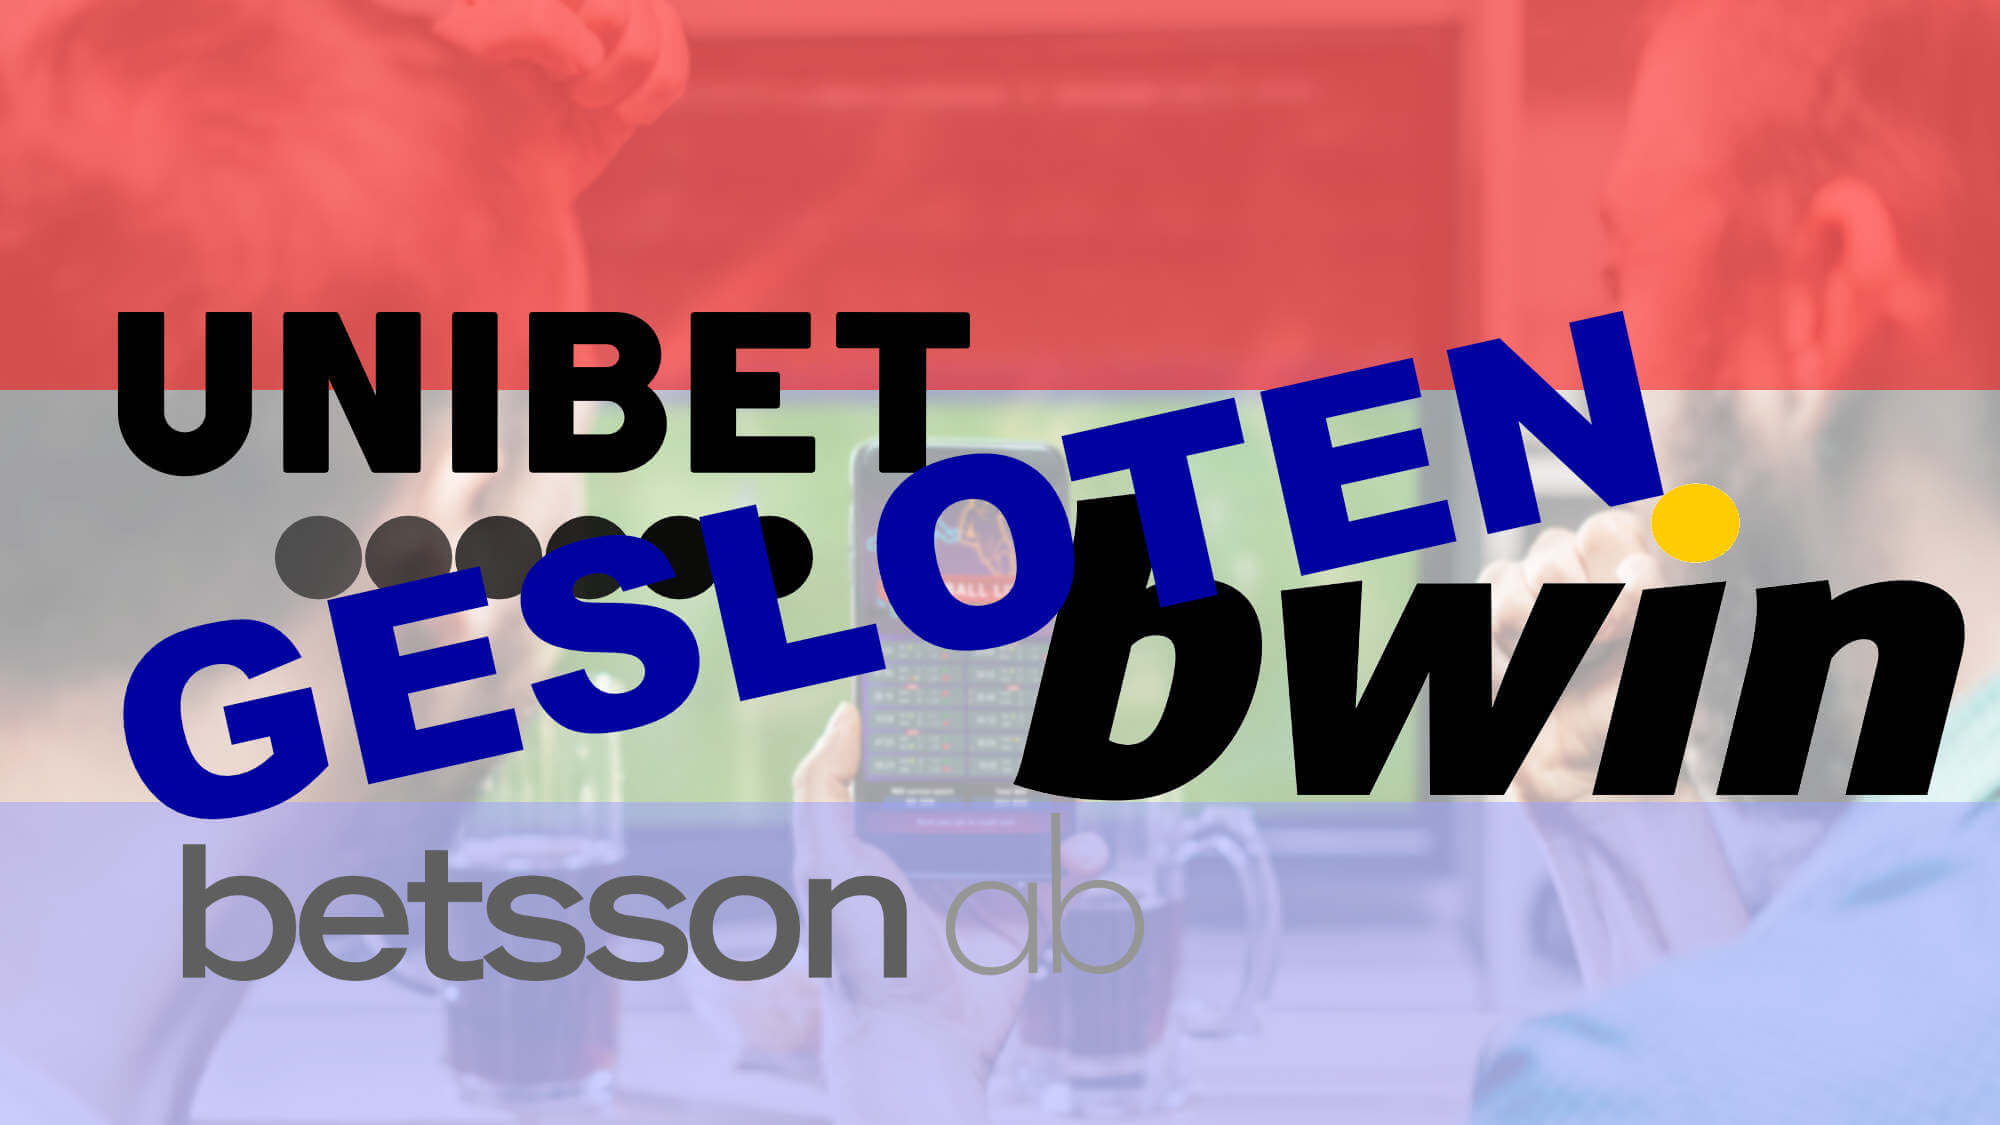 Unibet, Bwin en Betsson zijn gezloten op de NL markt.